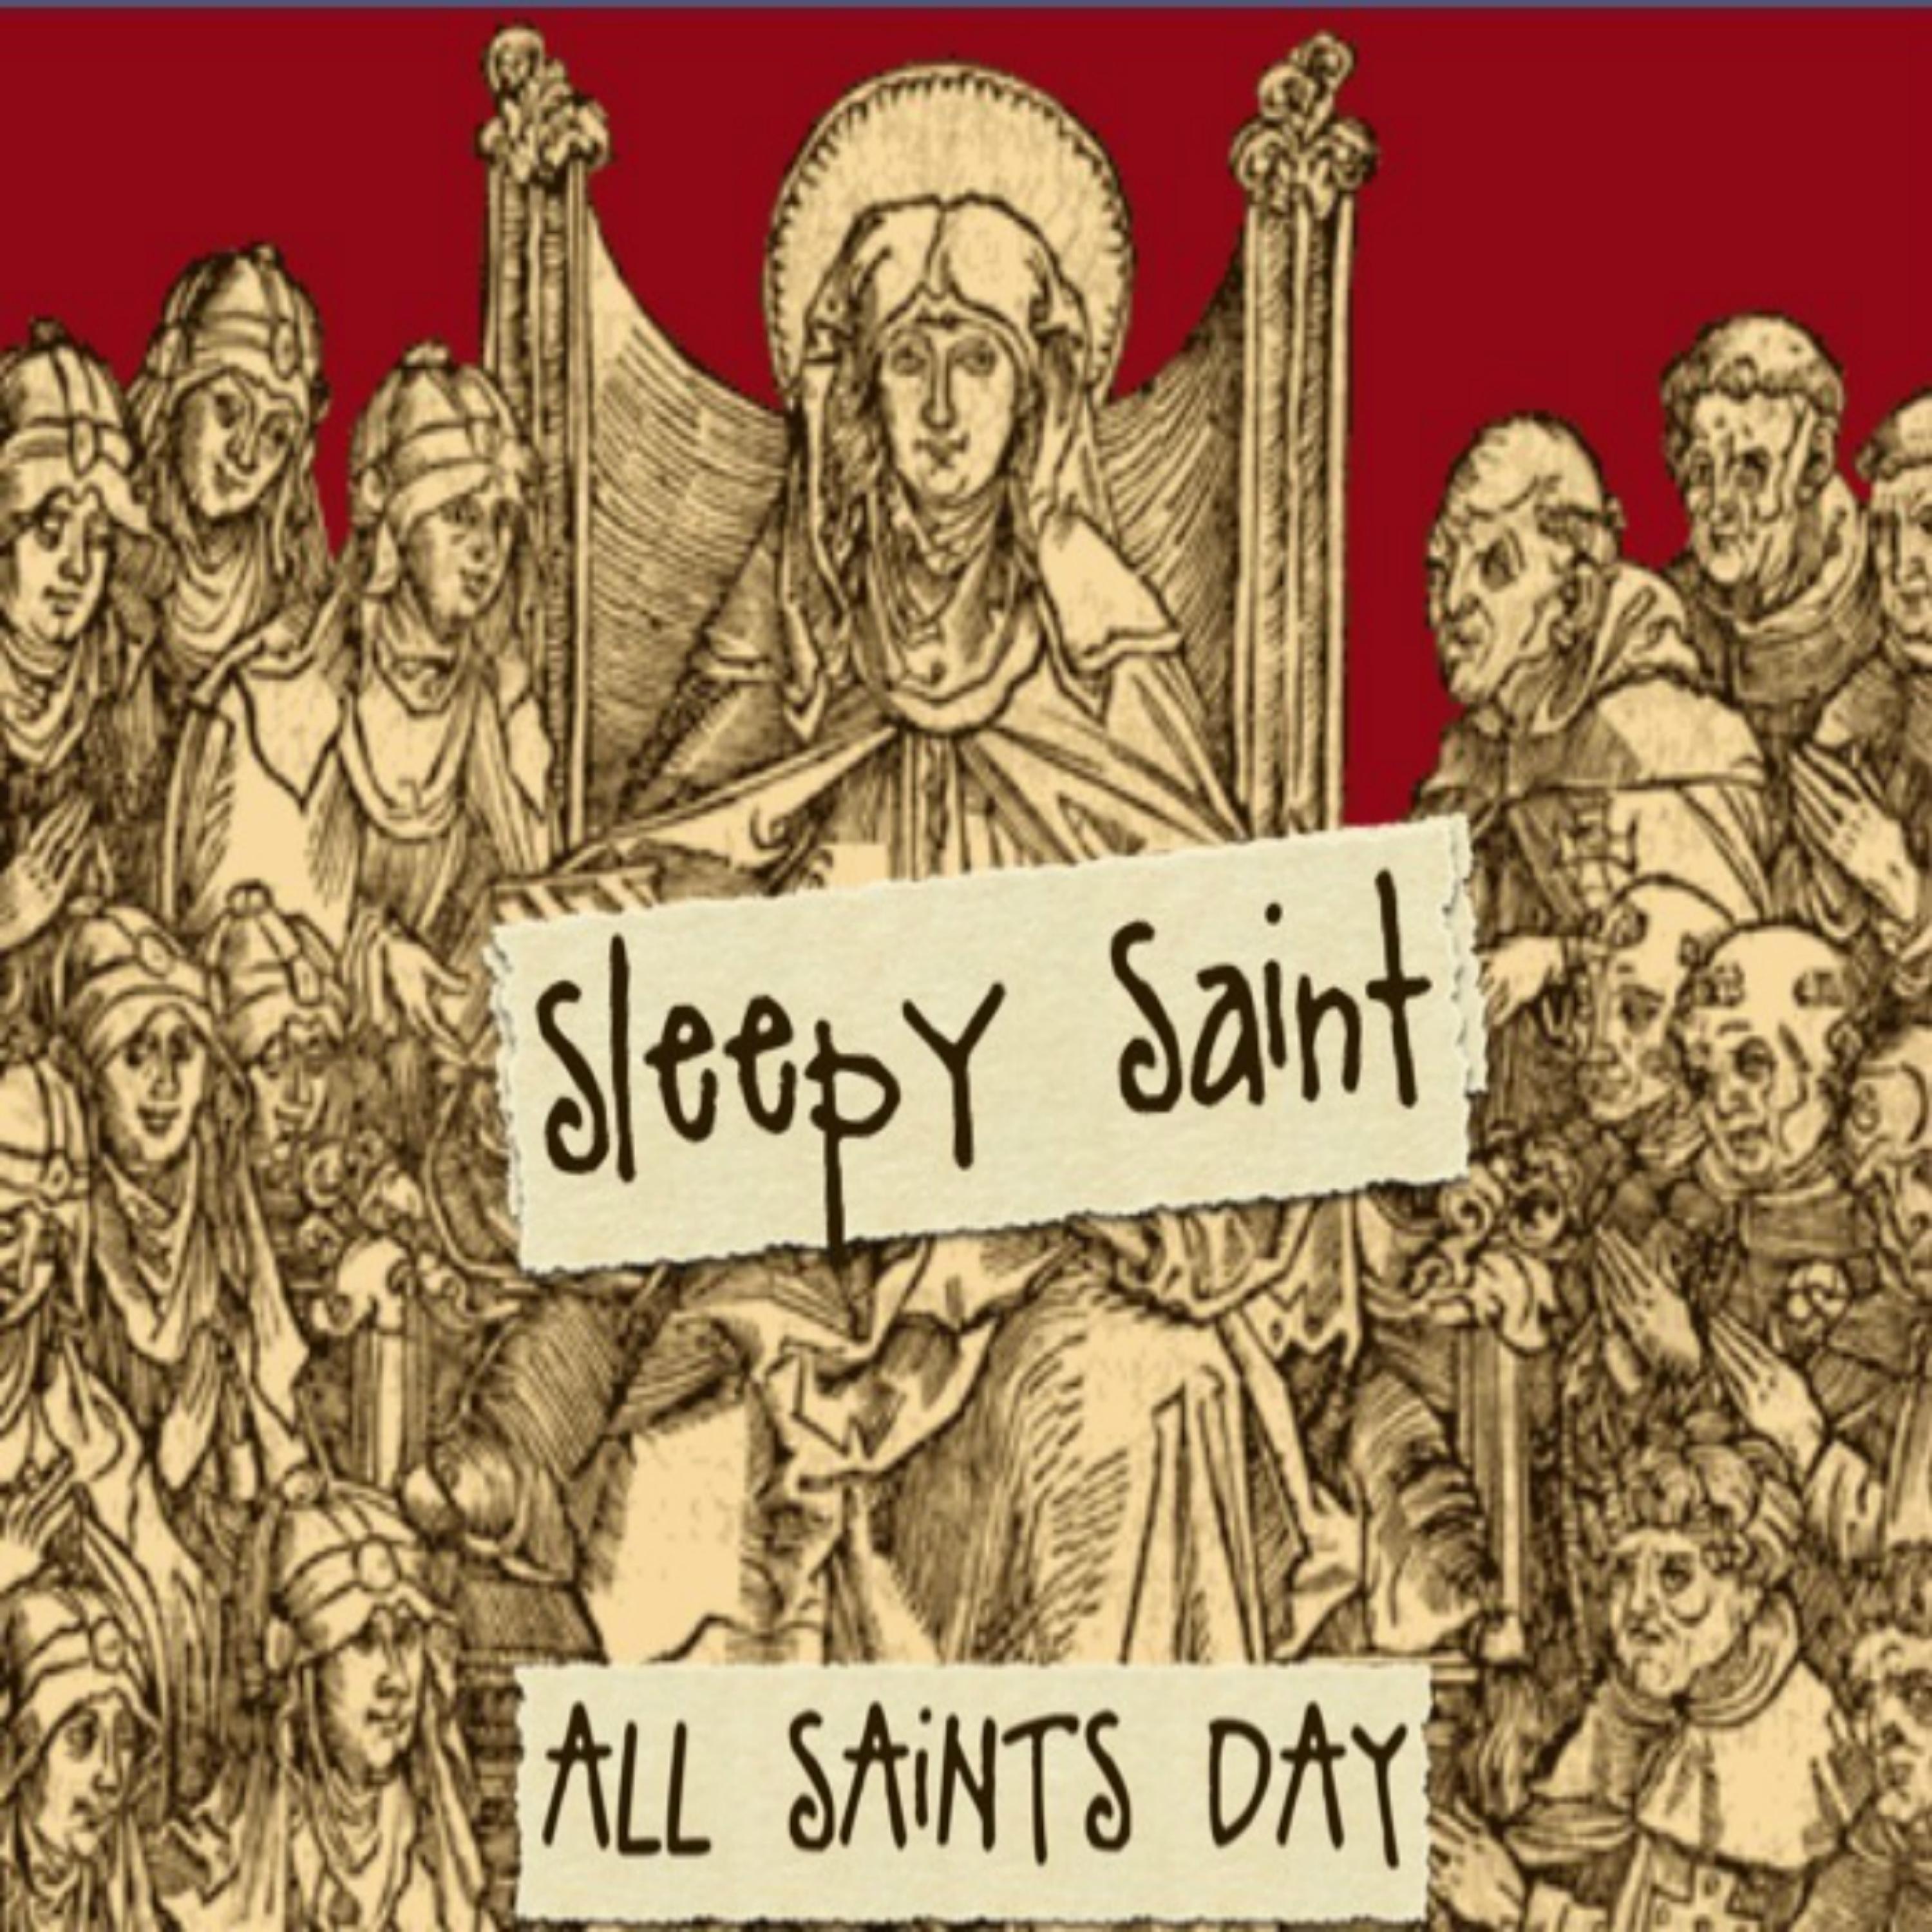 Iamsleep - He Lives (Bonus Track) [Sleepy Saint]